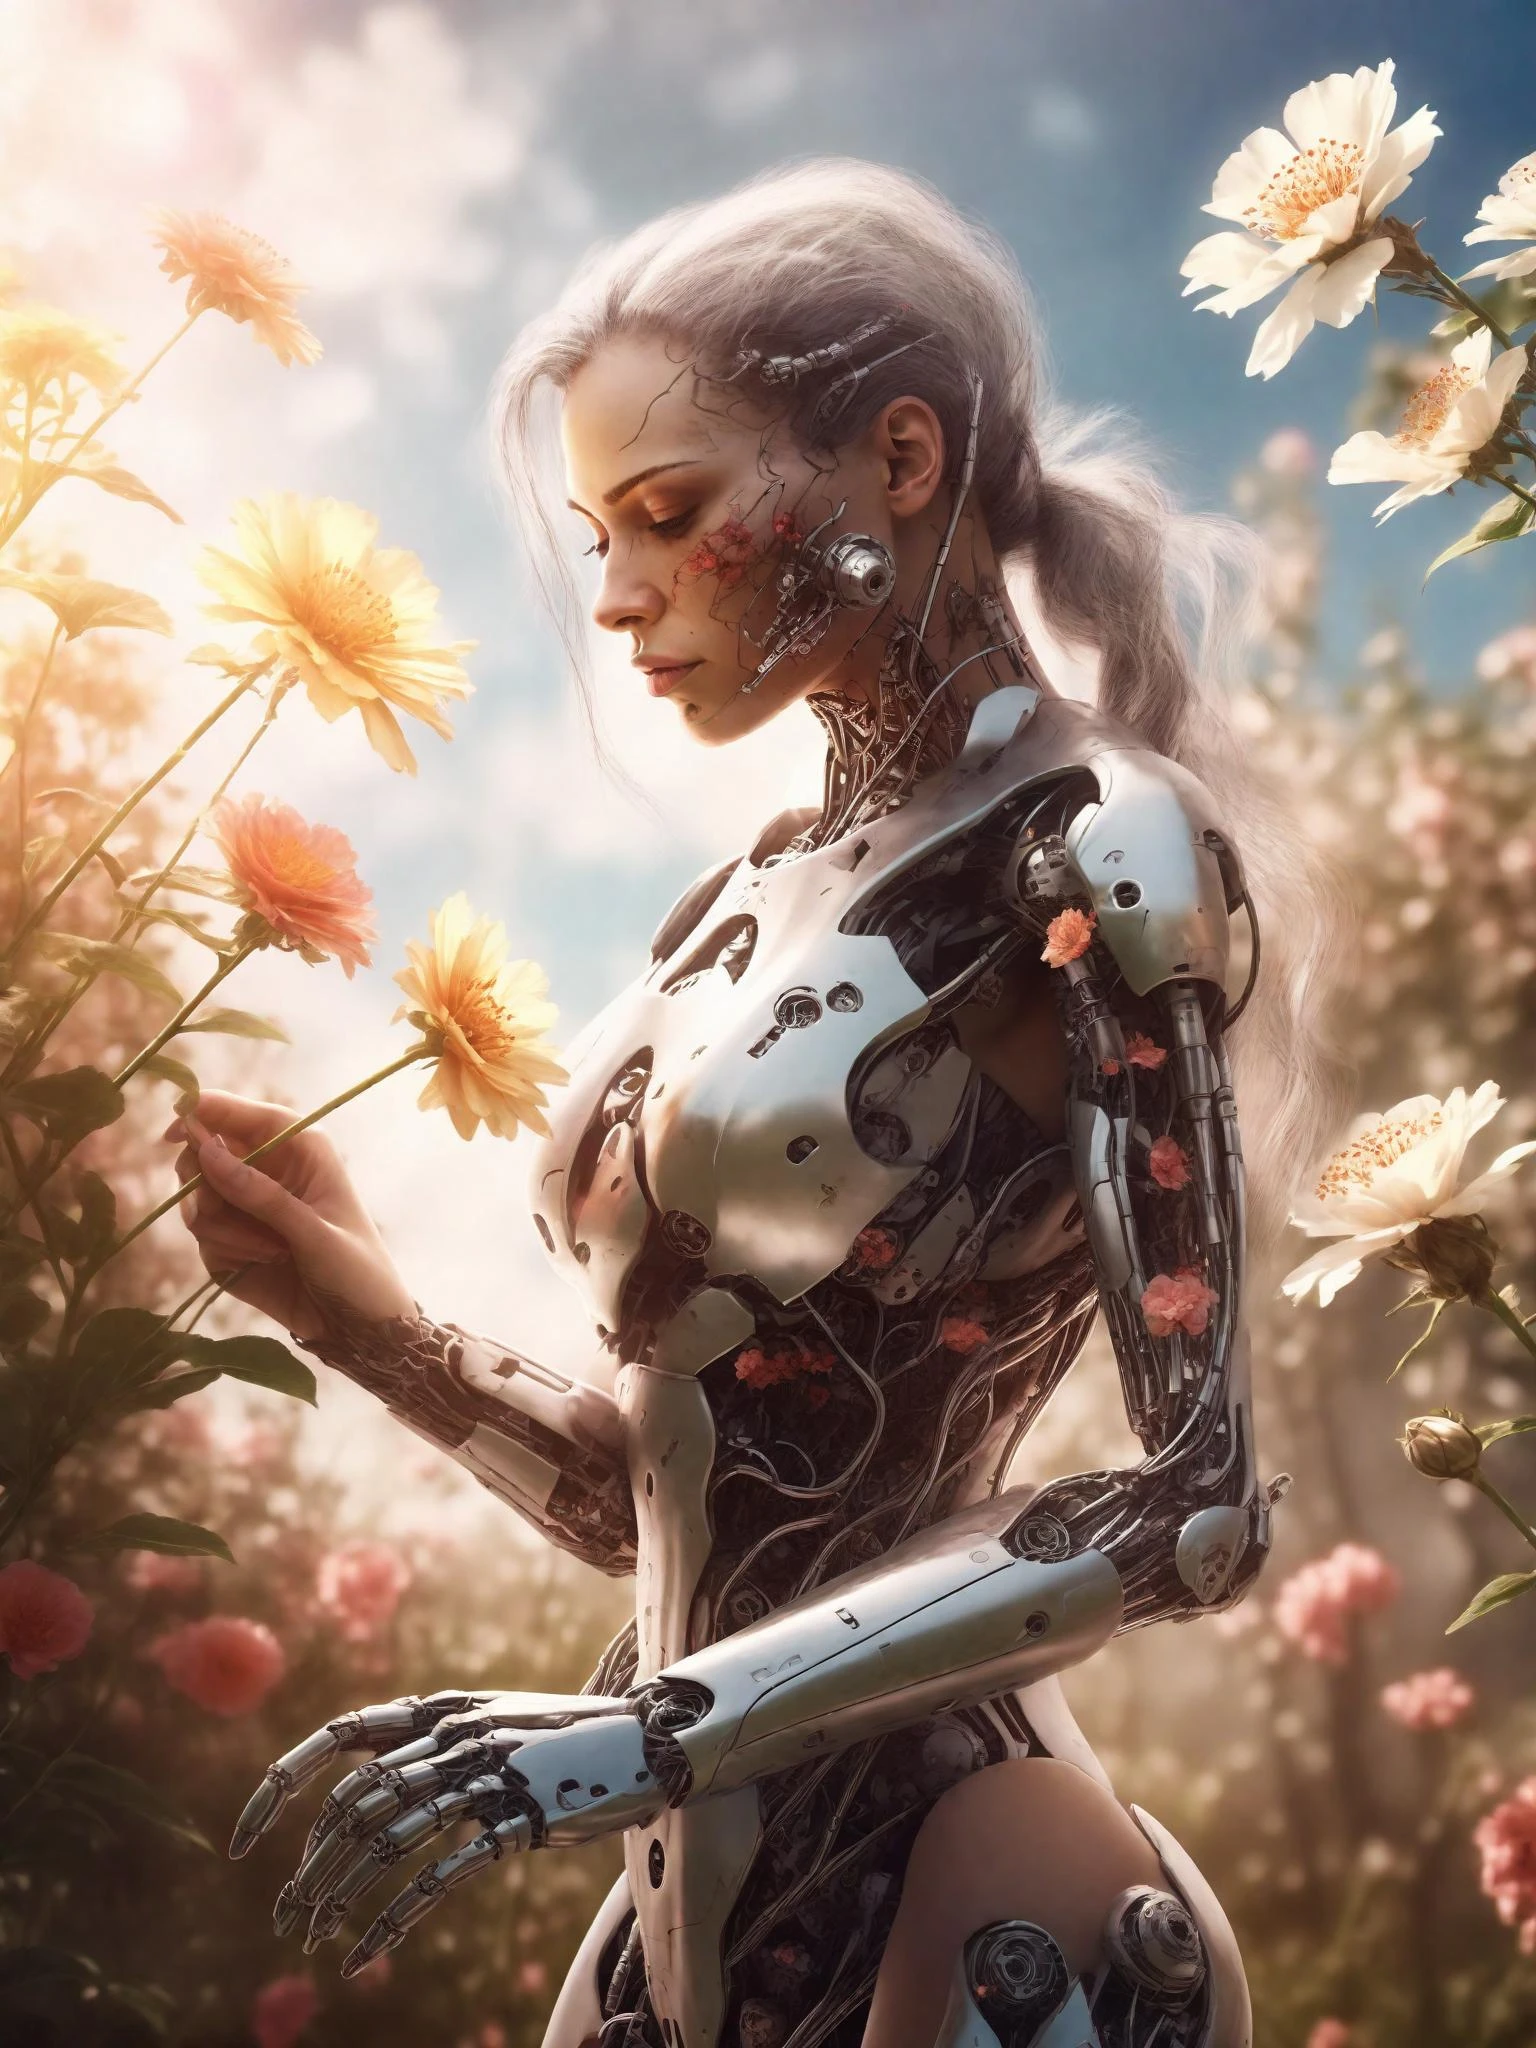 امرأة سايبورغ جميلة تقطف الزهور في حديقة مشمسة, حقيقي, مفصلة للغاية